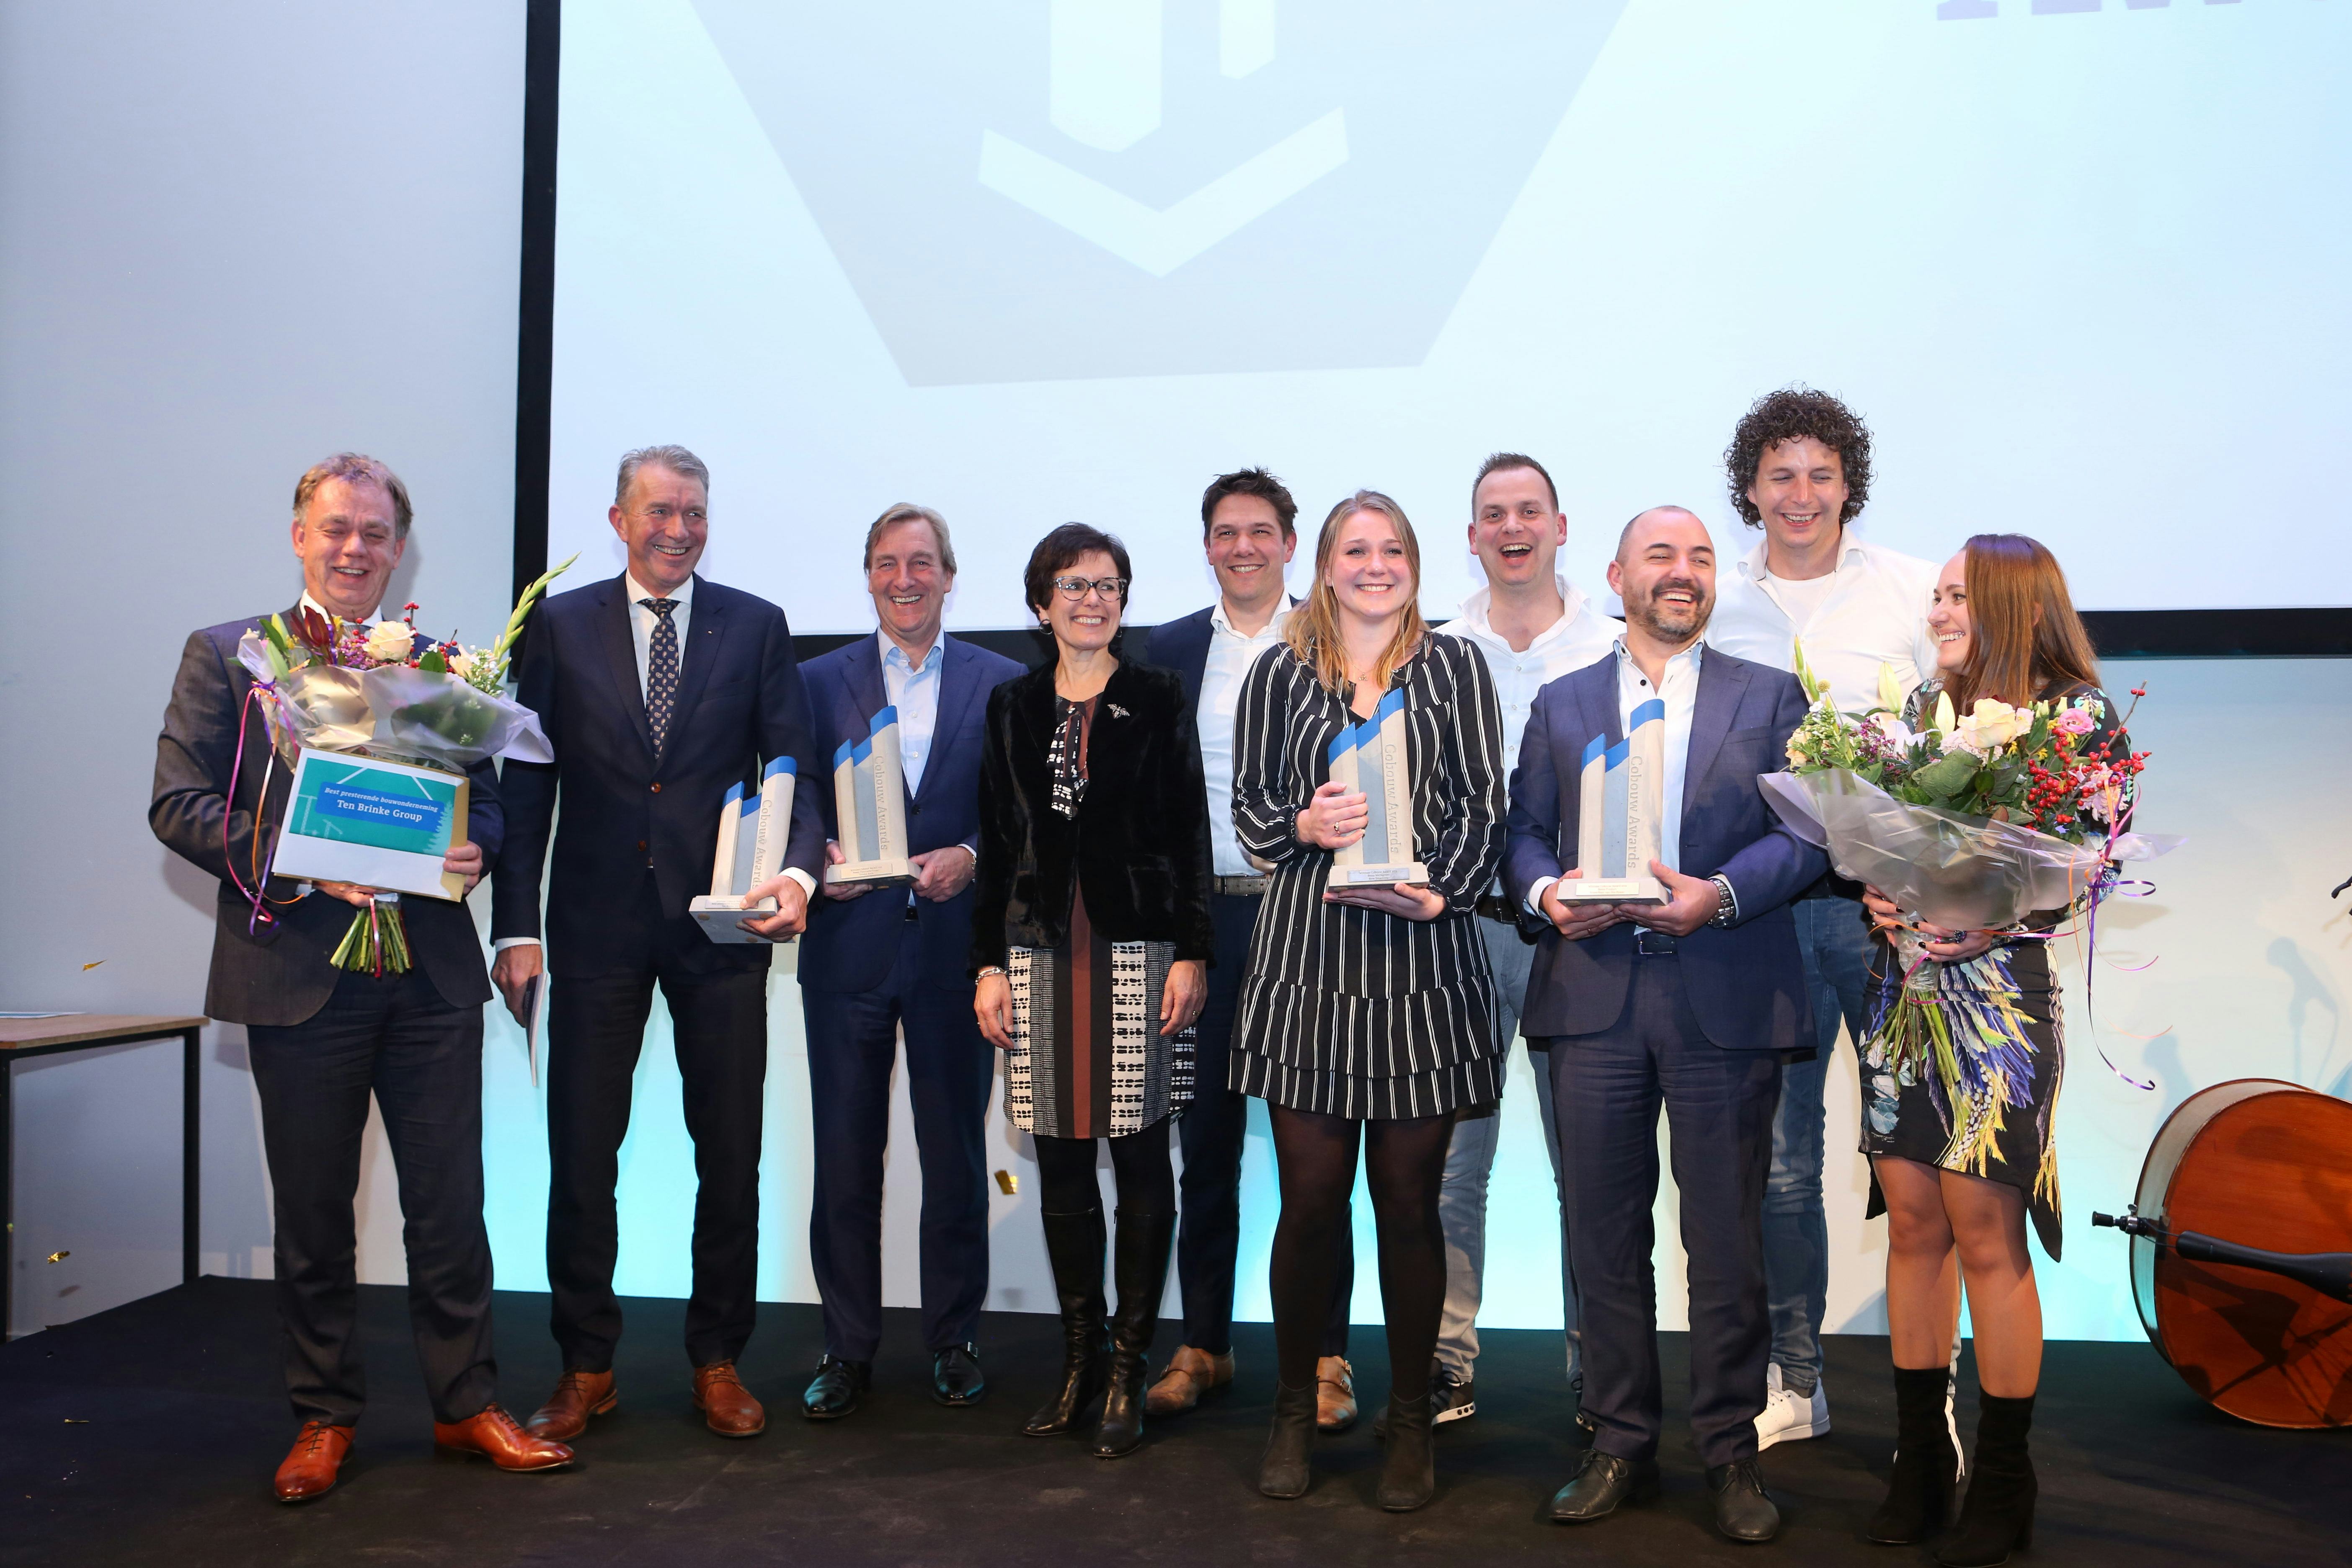 Ten Brinke wint Cobouw50 Award 2019